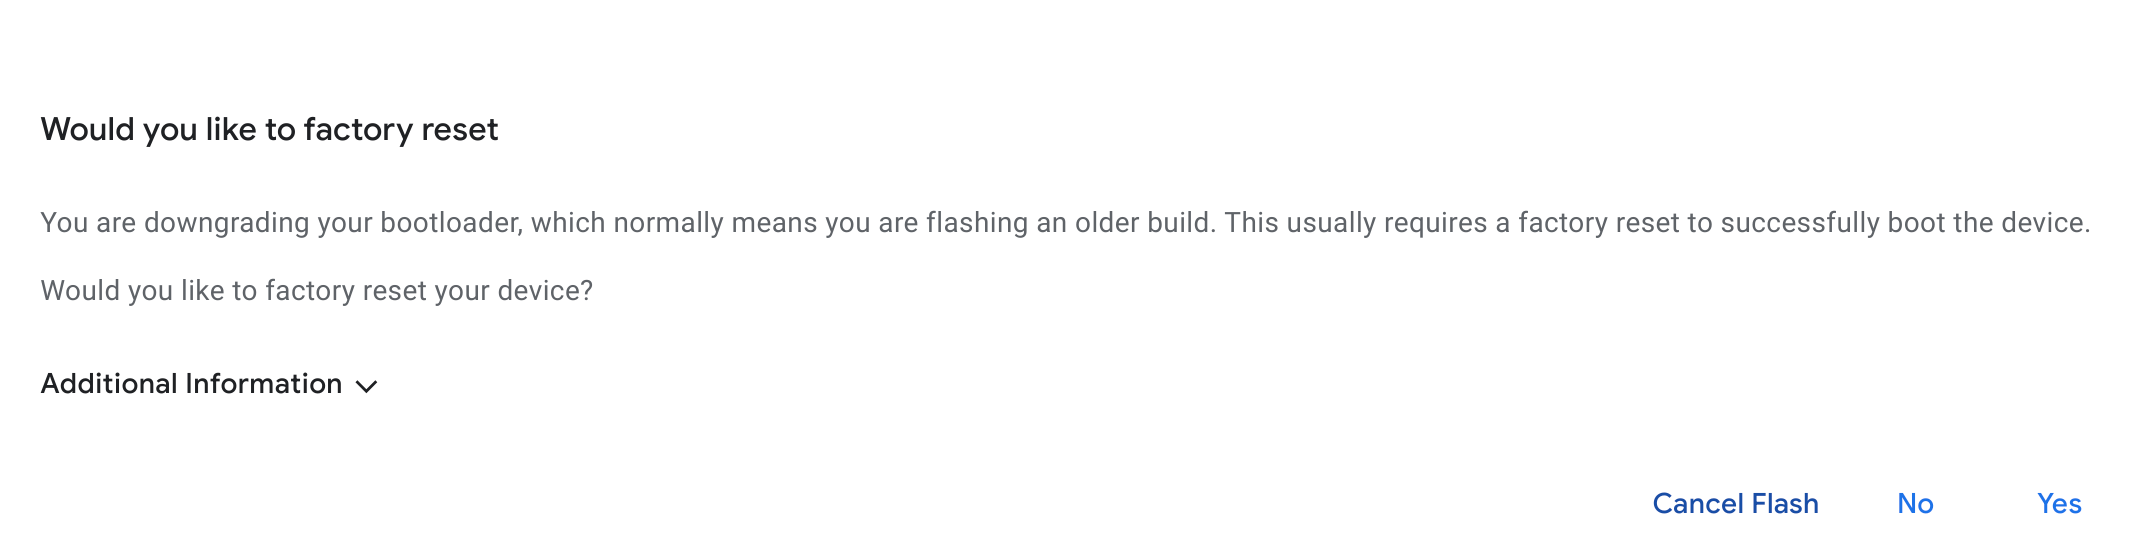 Mensagem da estação de flash perguntando se você quer redefinir o dispositivo para a configuração original
    dispositivo